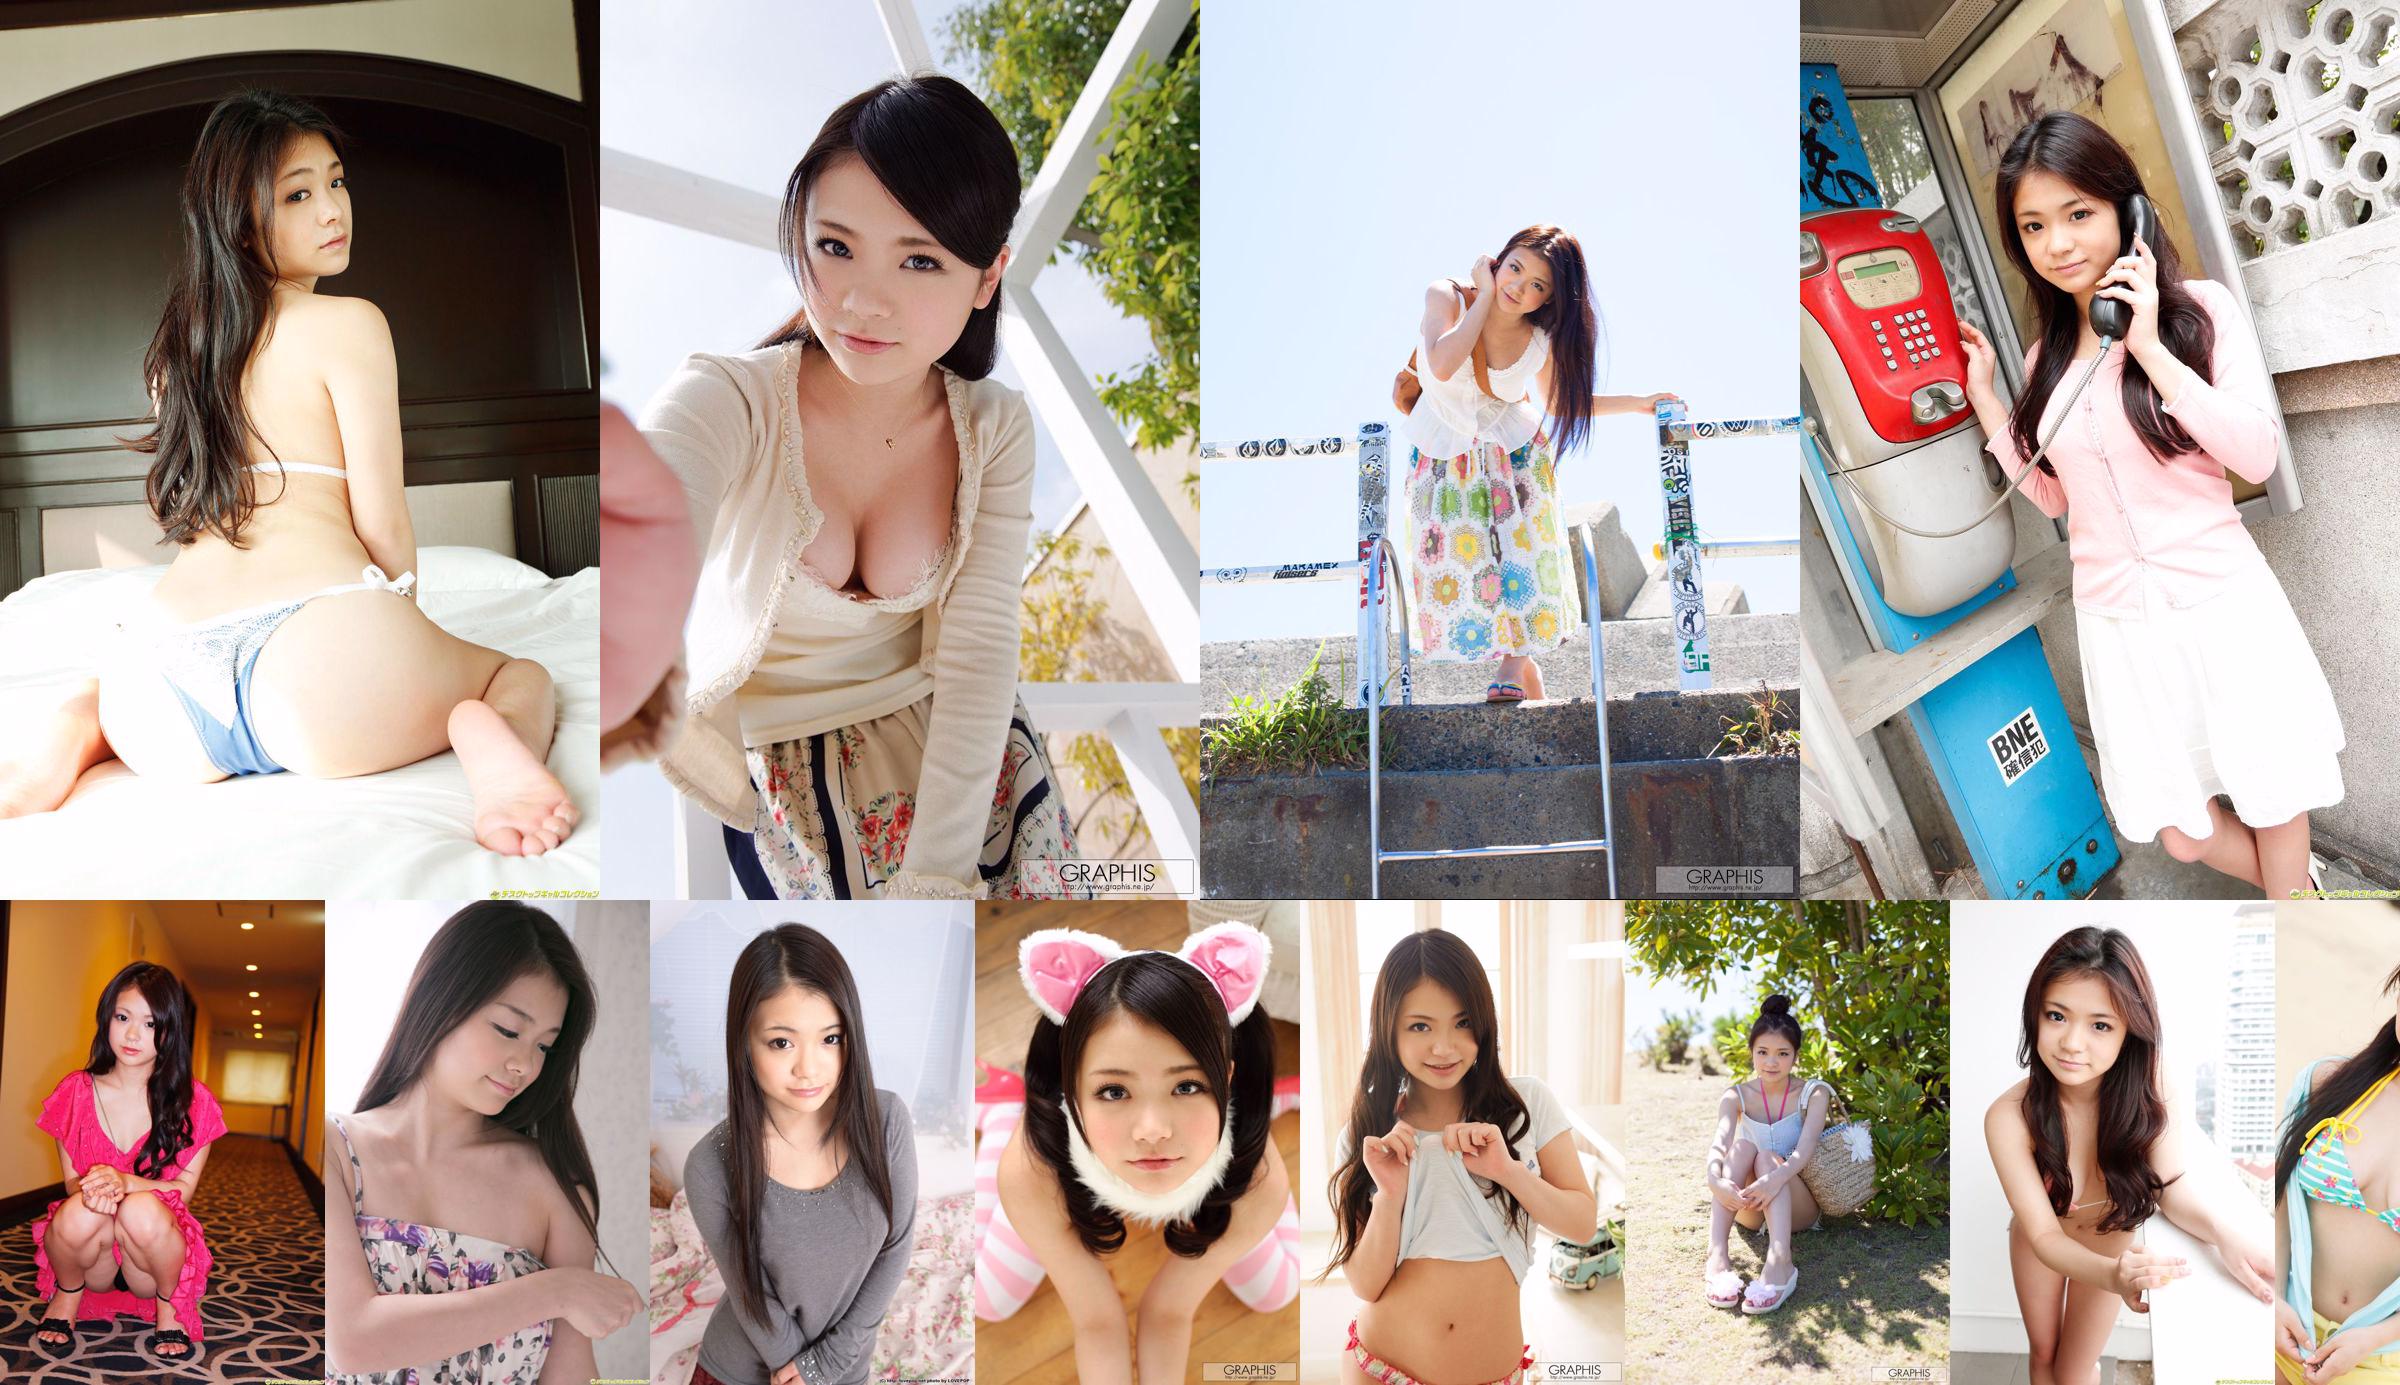 Mizuki Arikawa ~ Puppe arikawa mizuki03 [Imouto.tv] No.4be2ed Seite 1